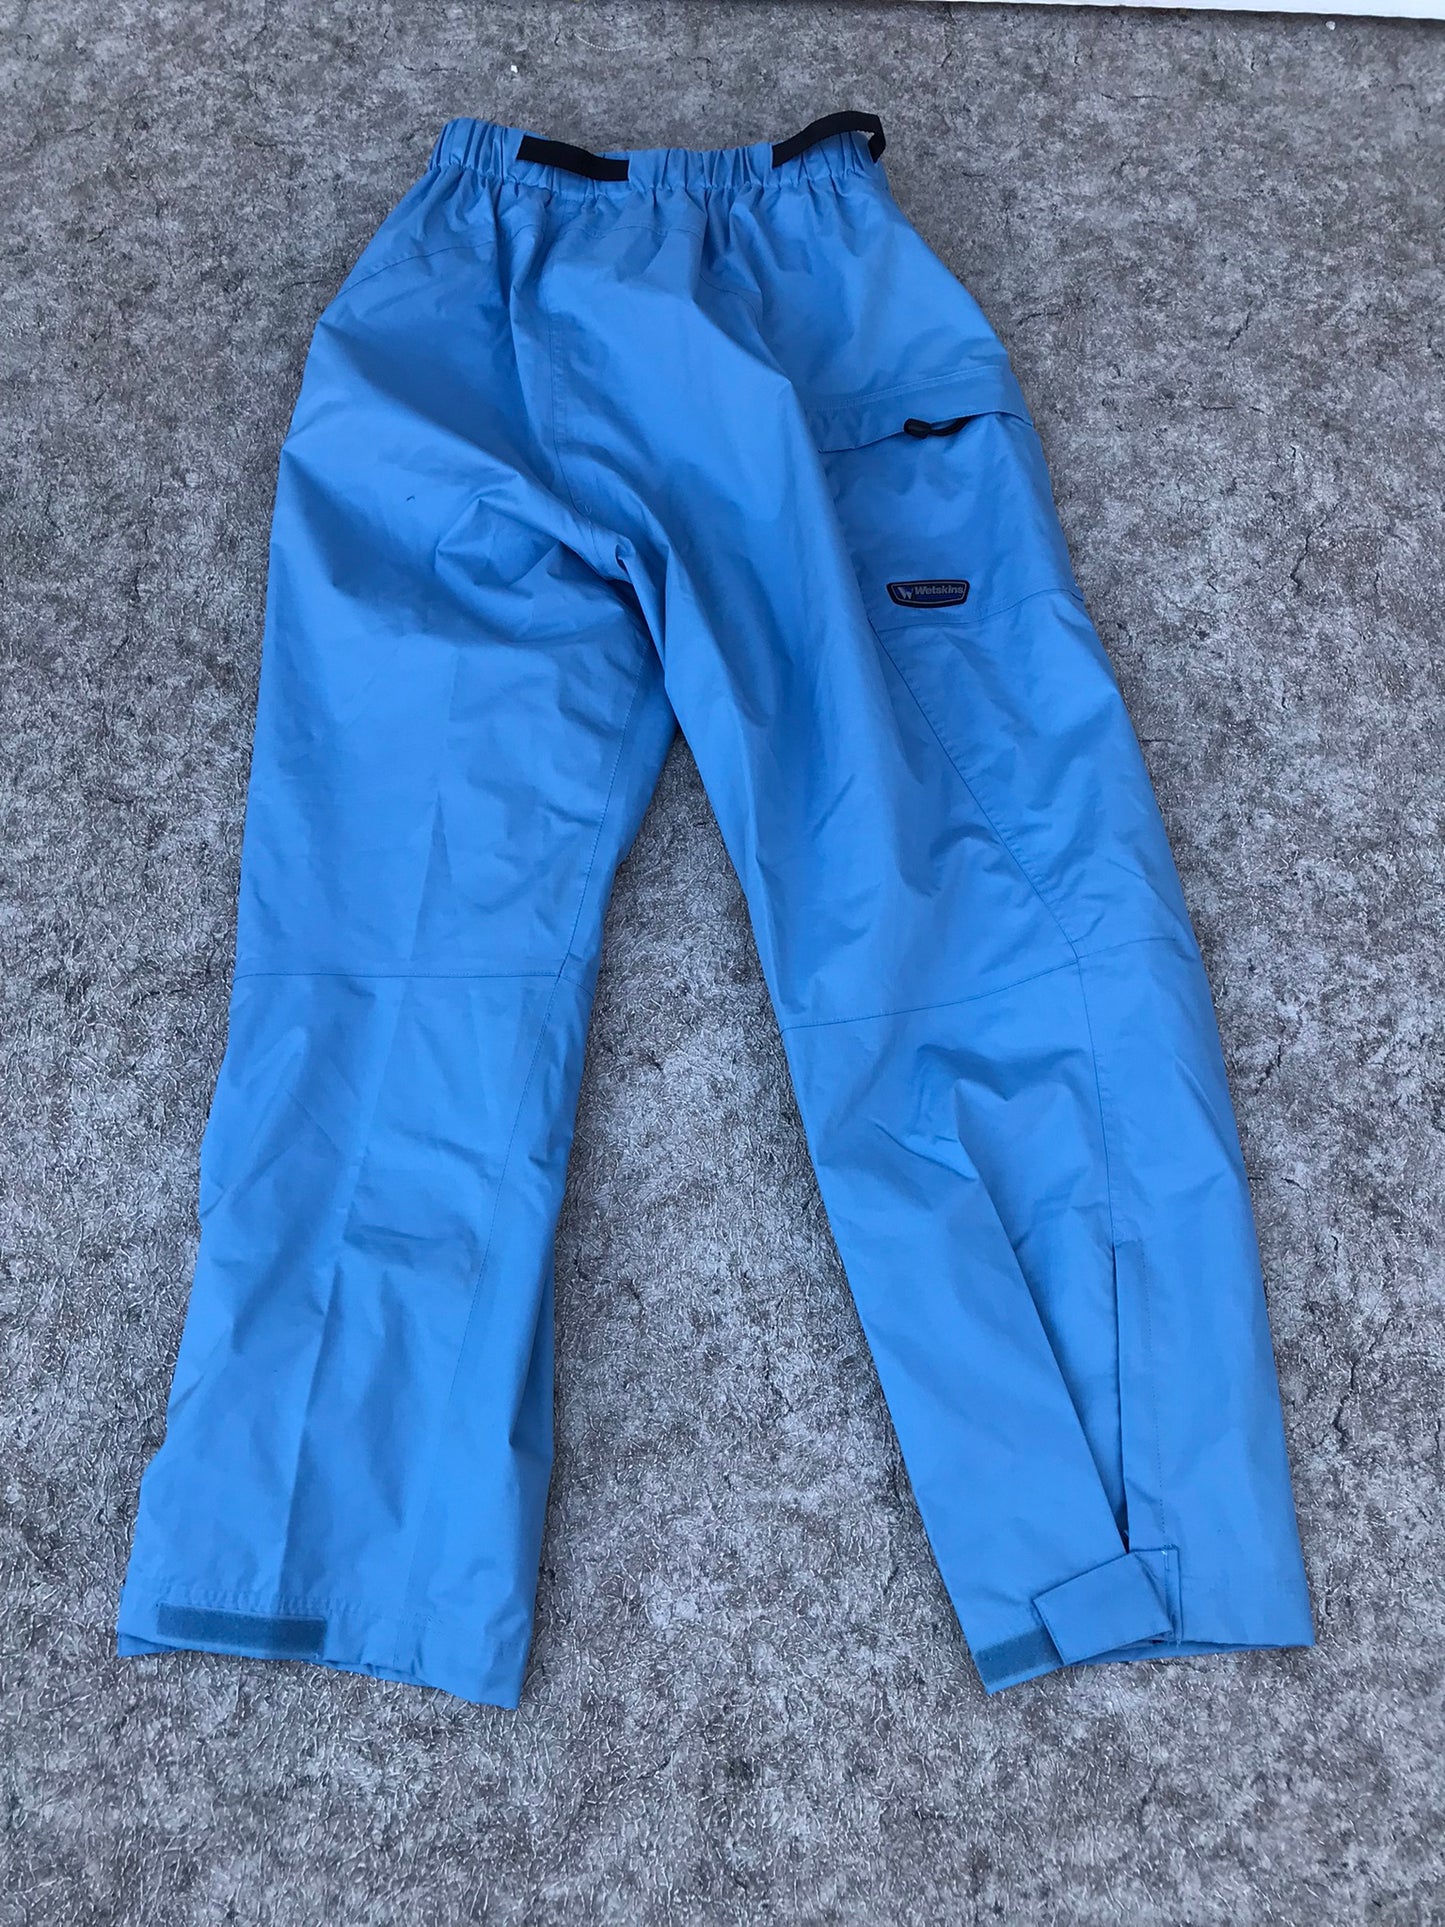 Rain Pants Ladies Size X Large Wetskins Aqua Blue Excellent